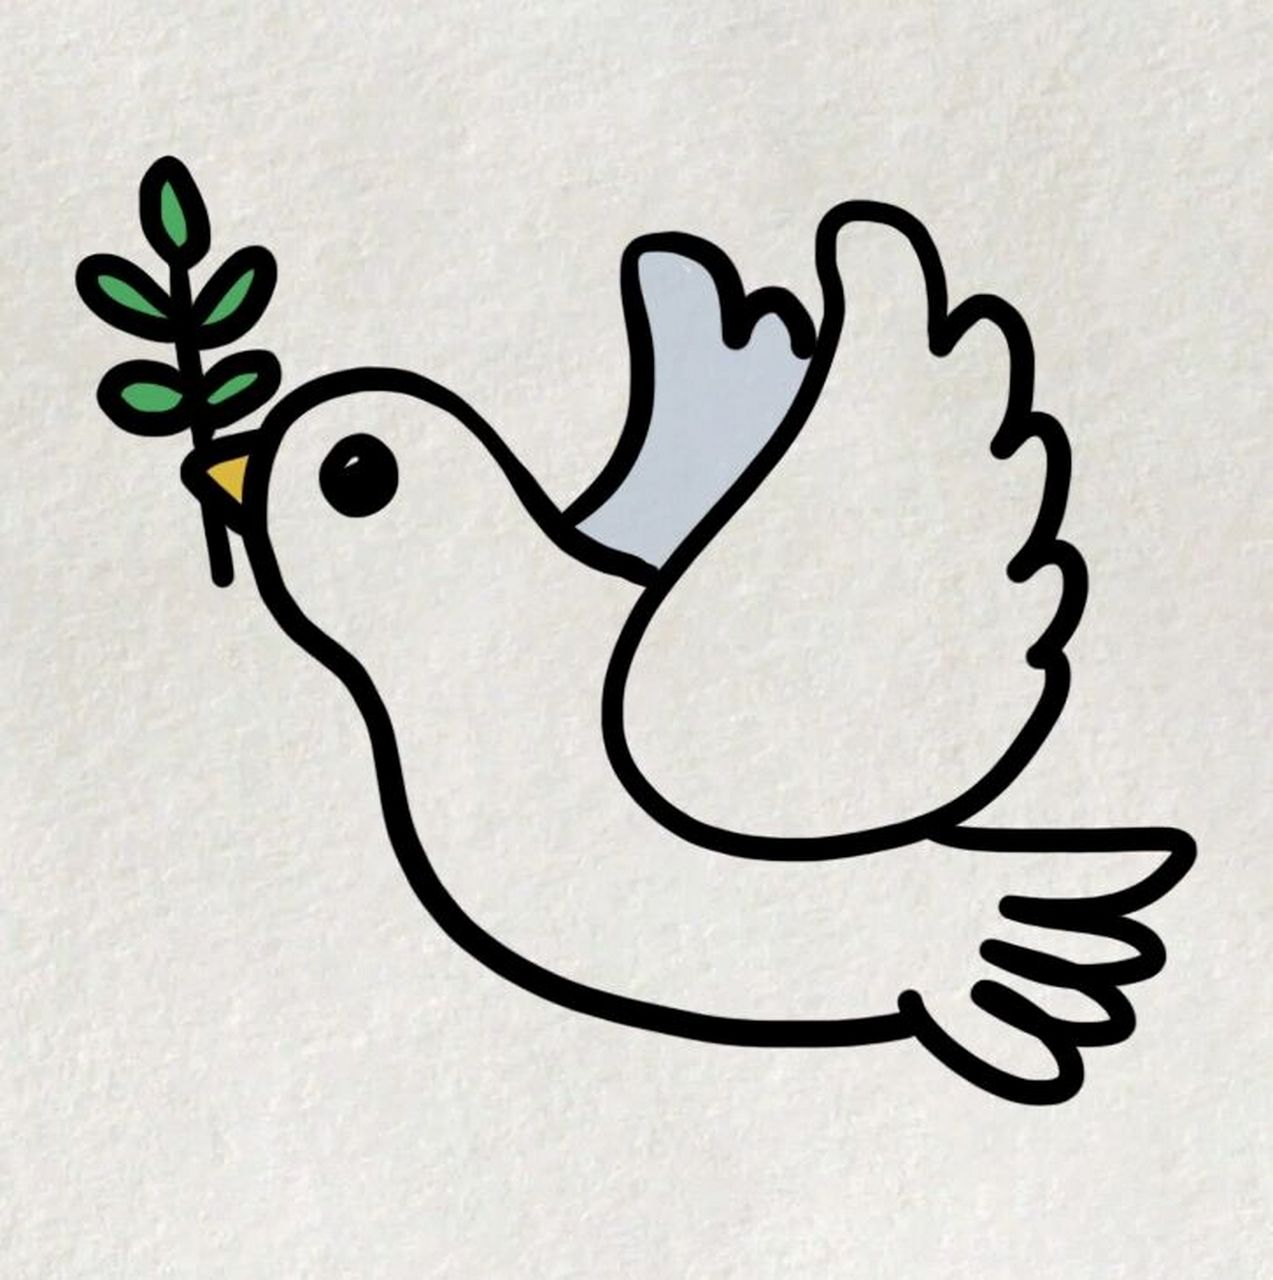 一只和平鸽9415的画法 愿世界和平05